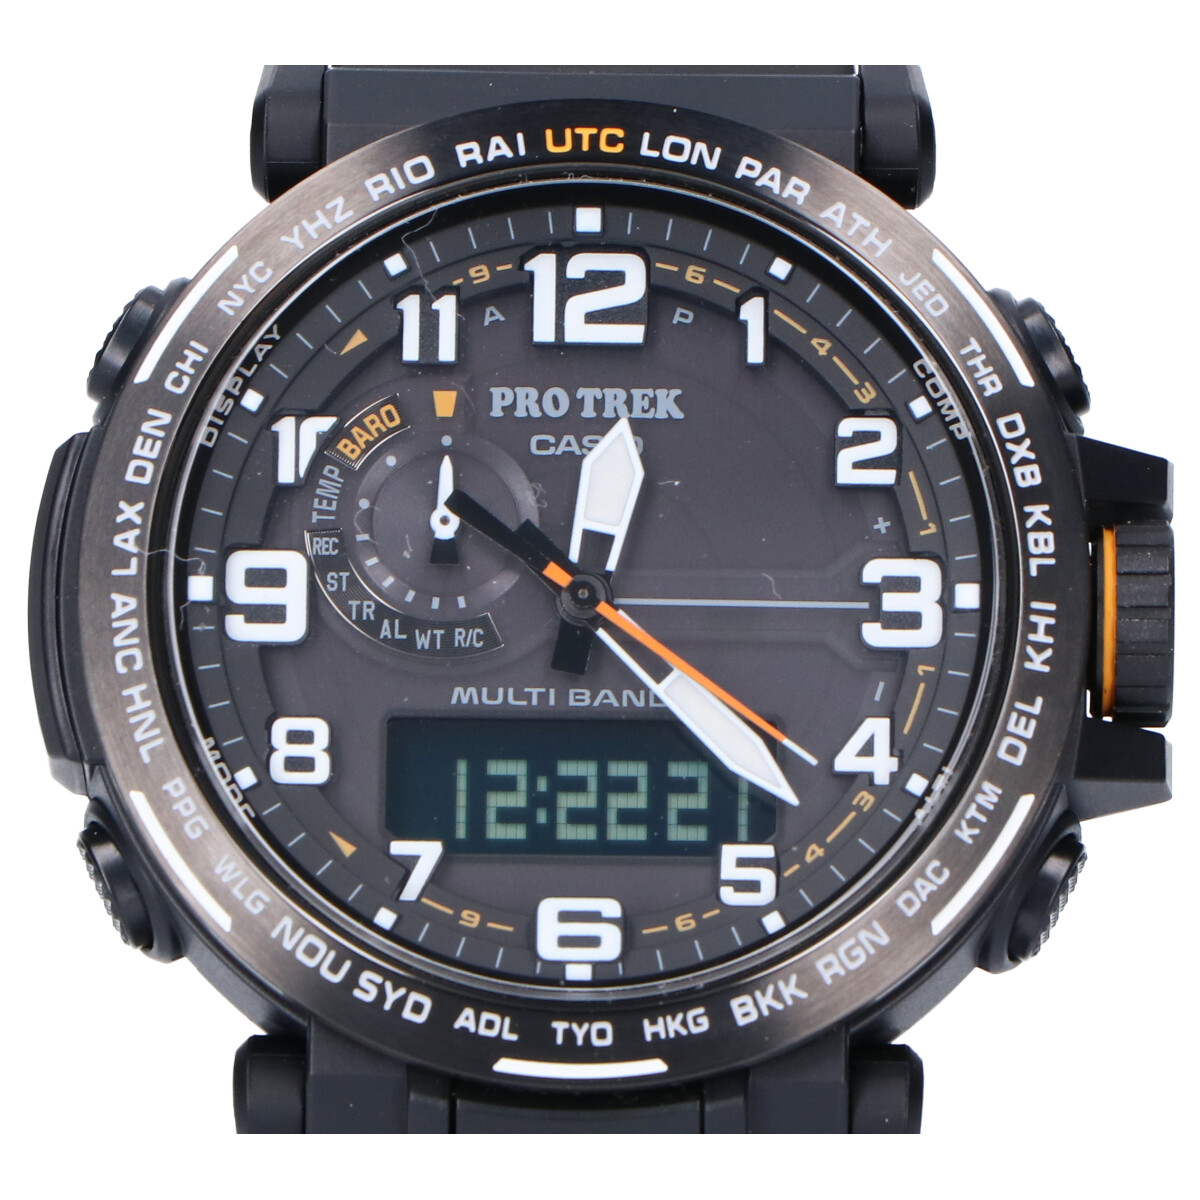 カシオのPRW-6600Y-1A9JF プロトレック MULTIBAND6 タフソーラー電波 腕時計の買取実績です。